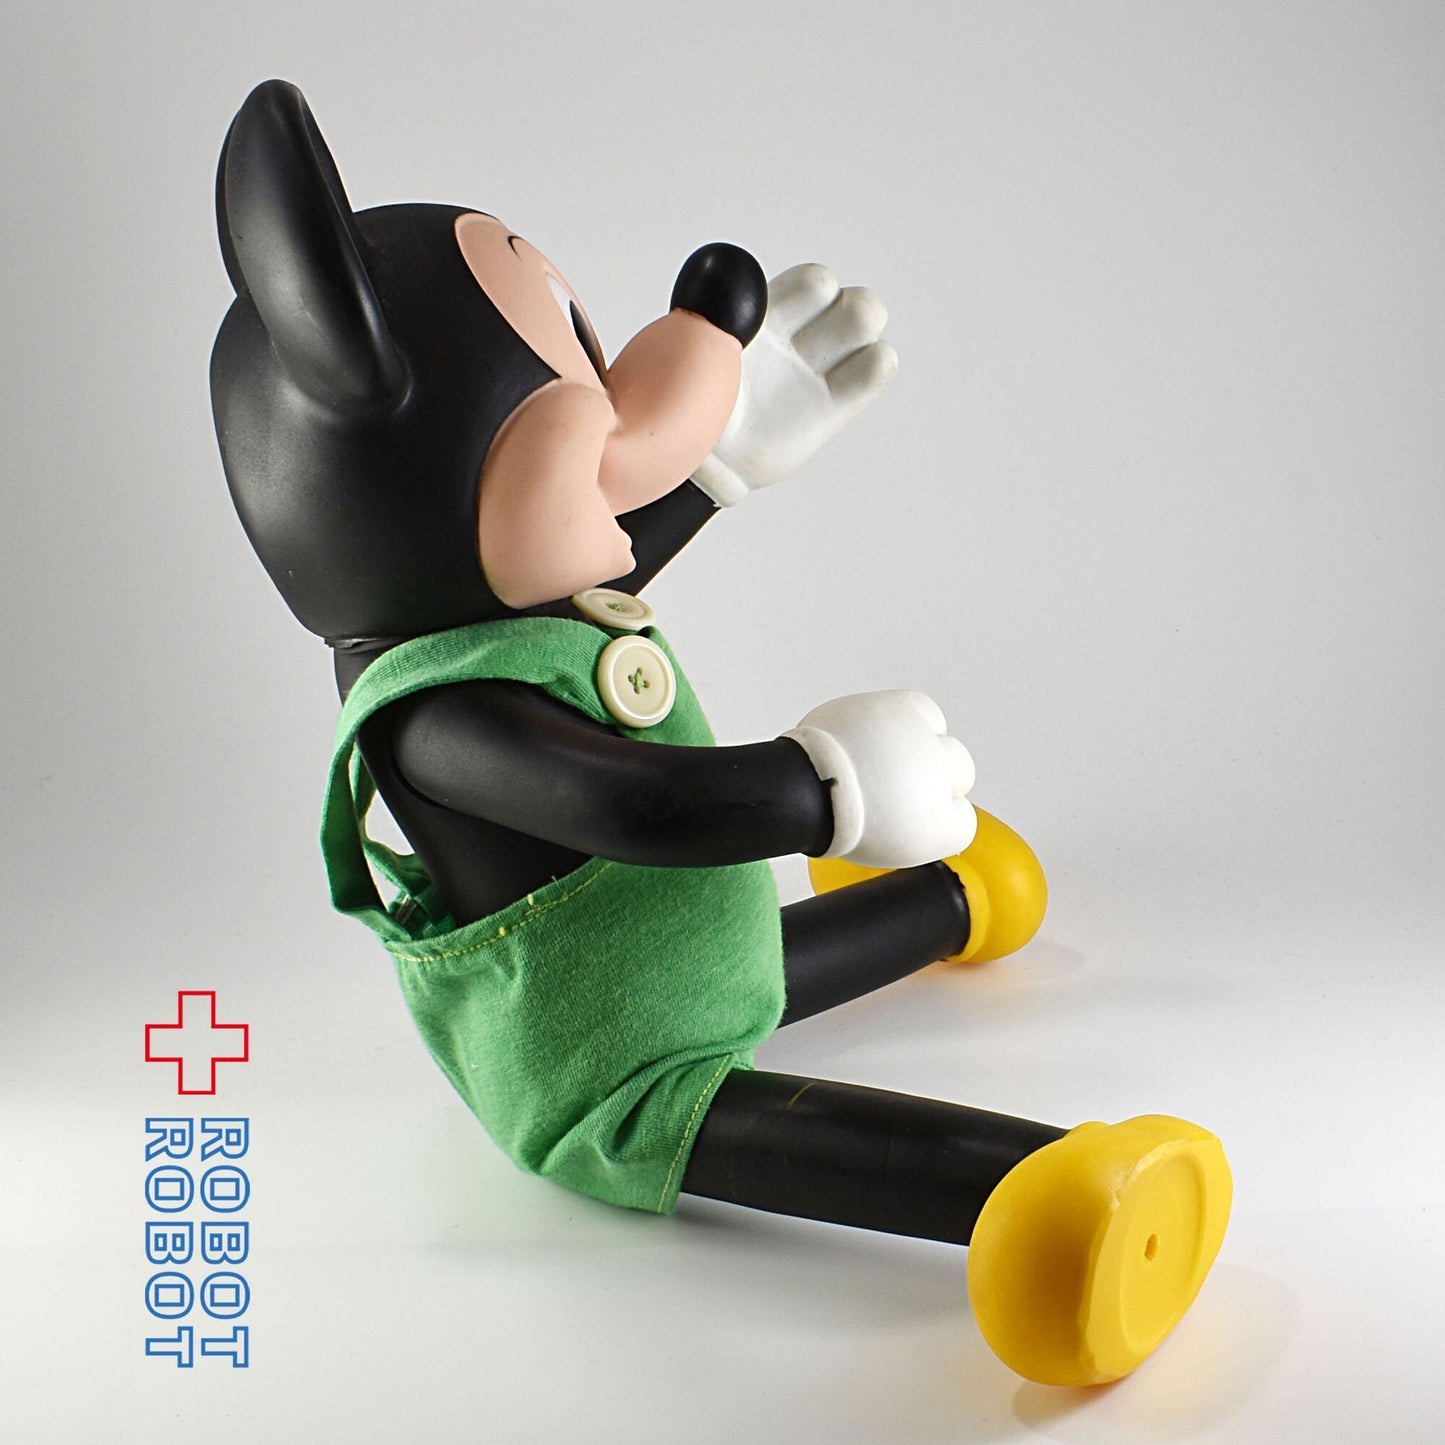 レムコ バースデイ・ミッキーマウス ビッグソフビドール 人形 緑 オーバーオール 1978